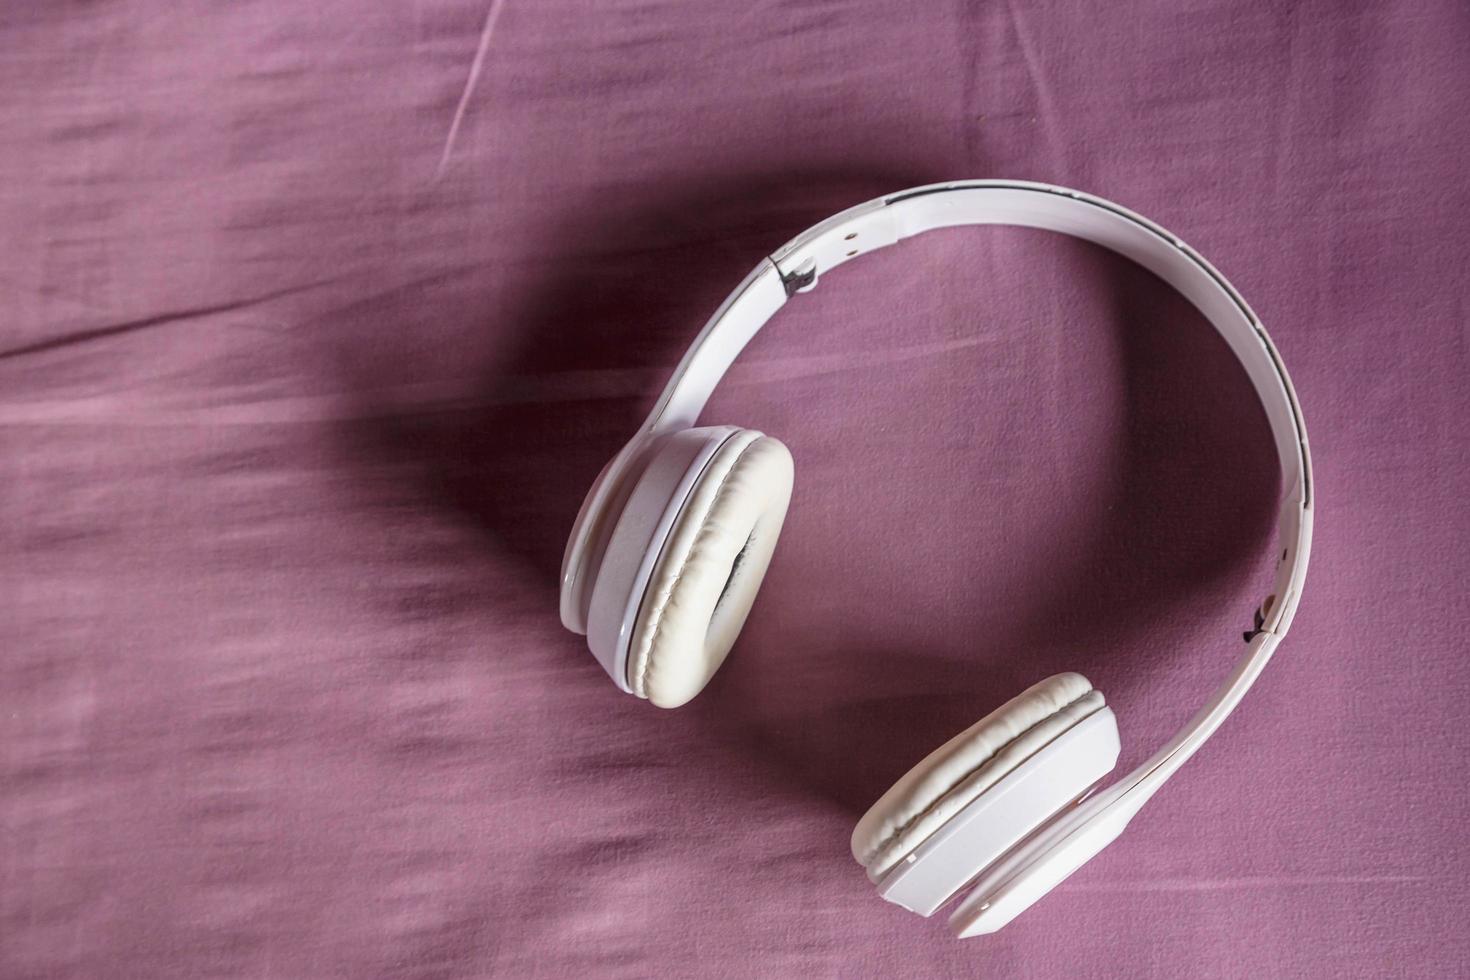 écouteurs blancs sur fond violet. notion de musique. photo